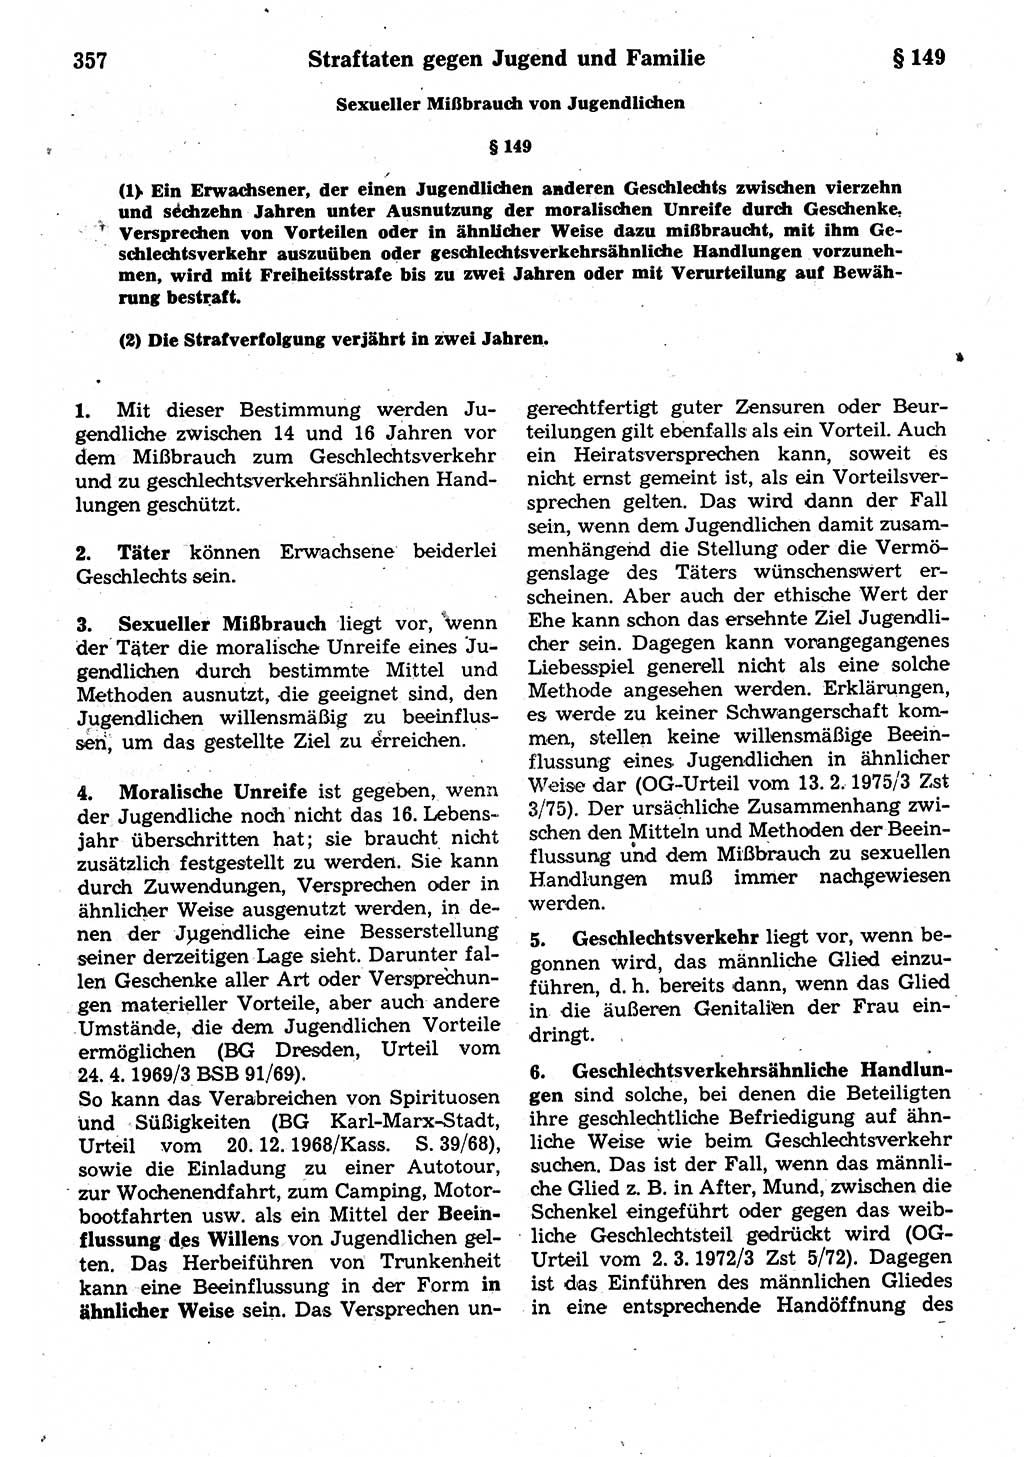 Strafrecht der Deutschen Demokratischen Republik (DDR), Kommentar zum Strafgesetzbuch (StGB) 1987, Seite 357 (Strafr. DDR Komm. StGB 1987, S. 357)